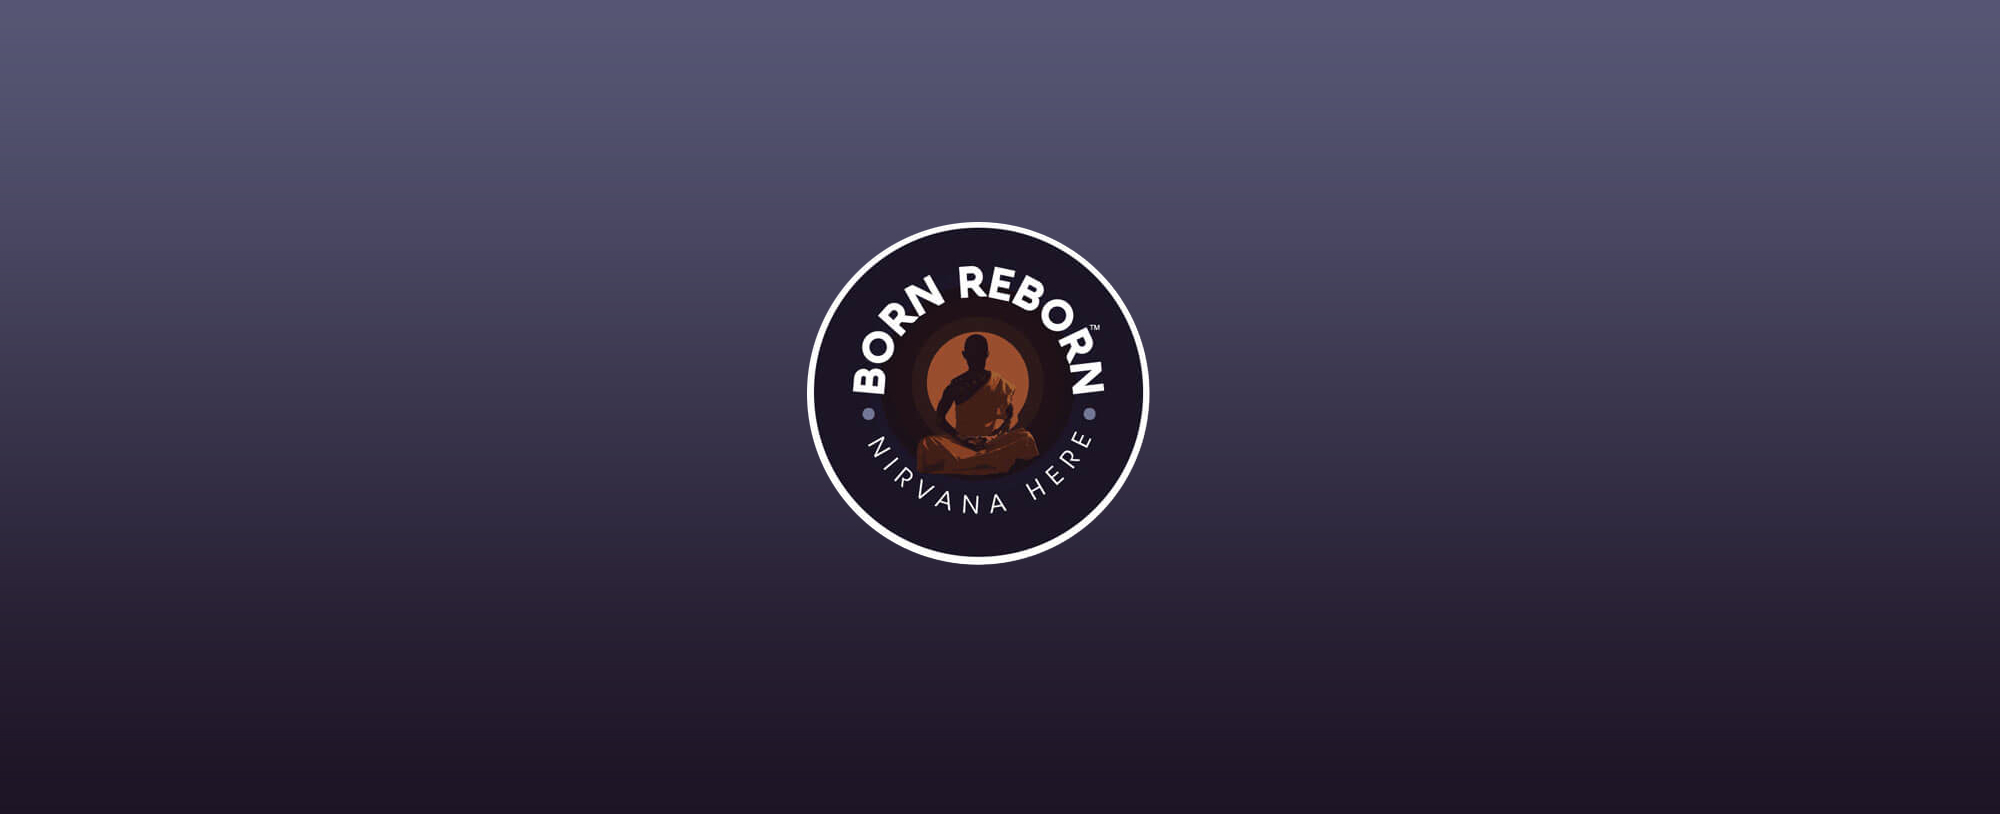 bon-reborn-logo